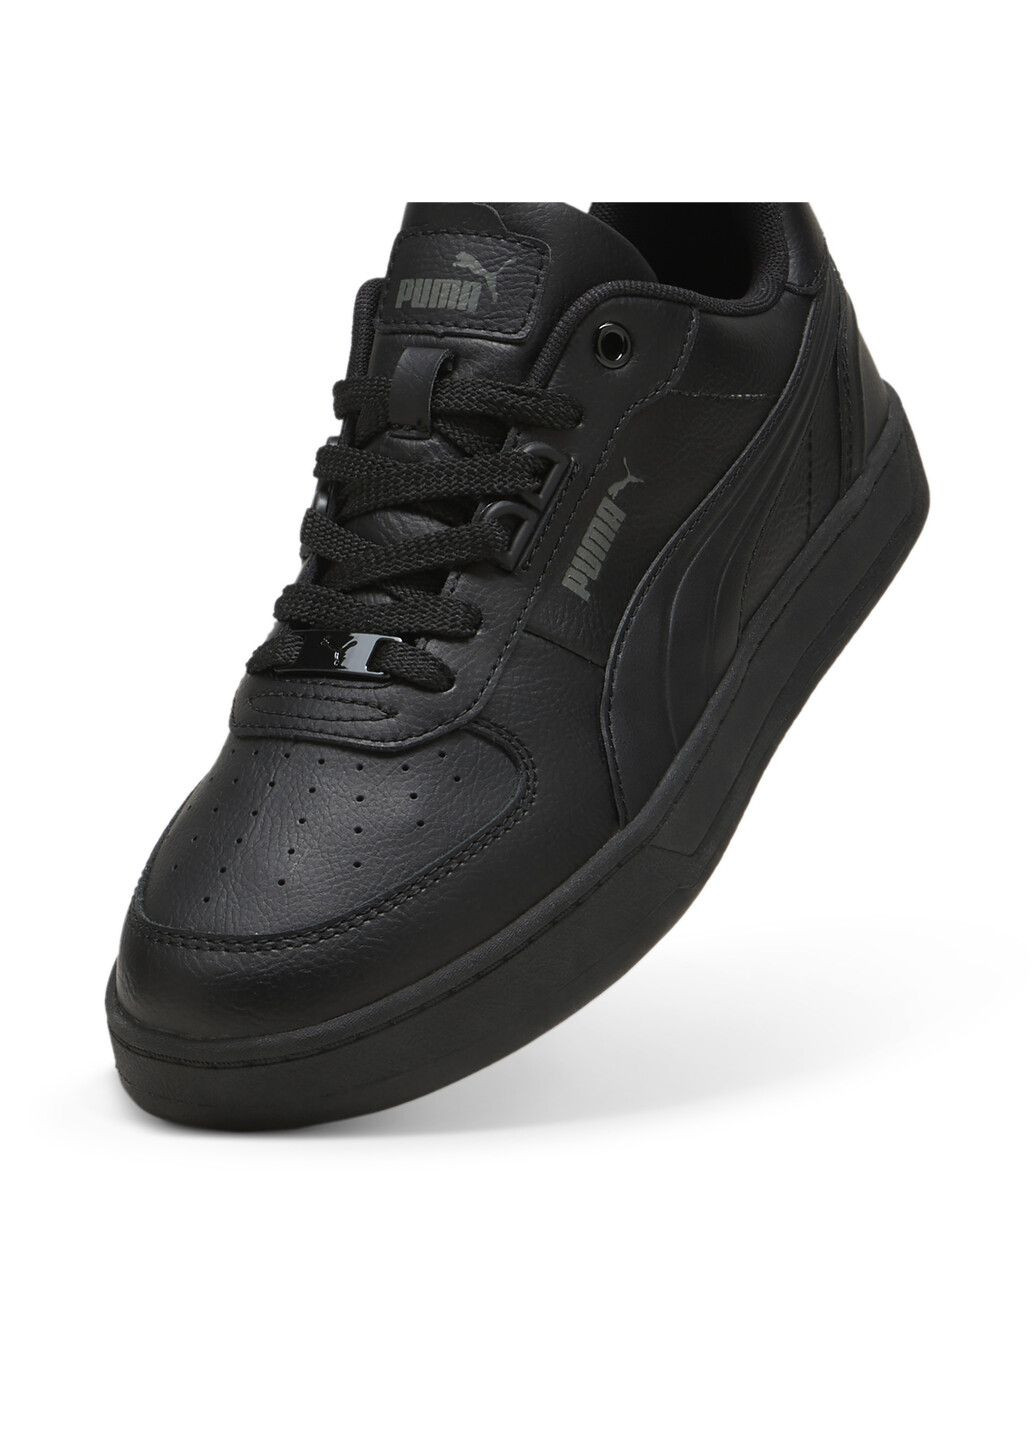 Черные всесезонные кеды caven 2.0 lux unisex sneakers Puma